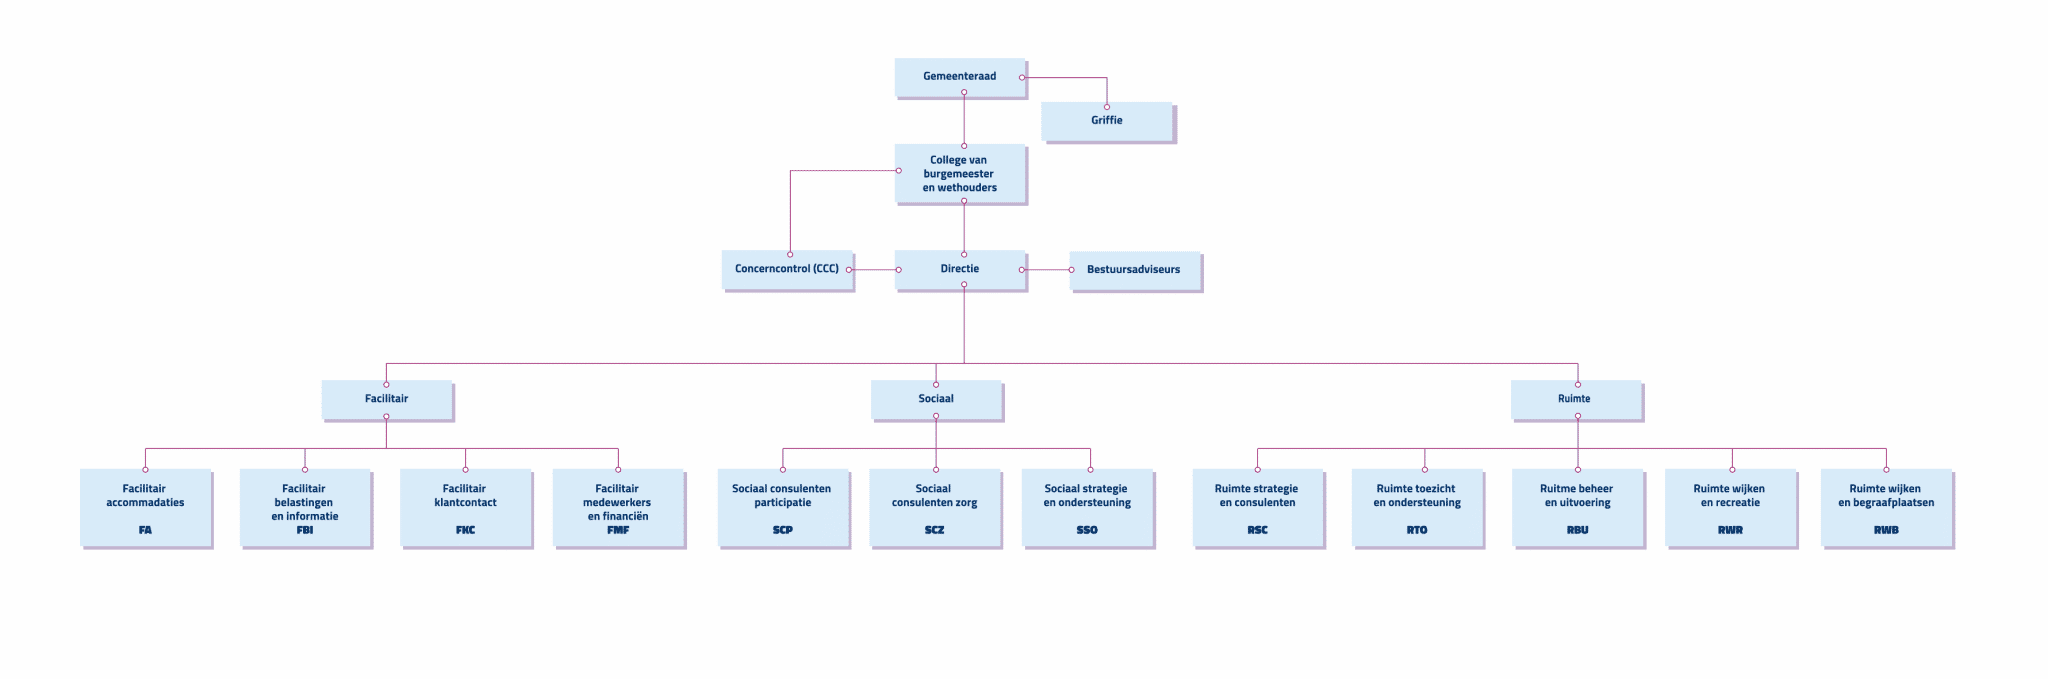 Het organogram: een overzicht van de gemeentelijke organisatie in een schema